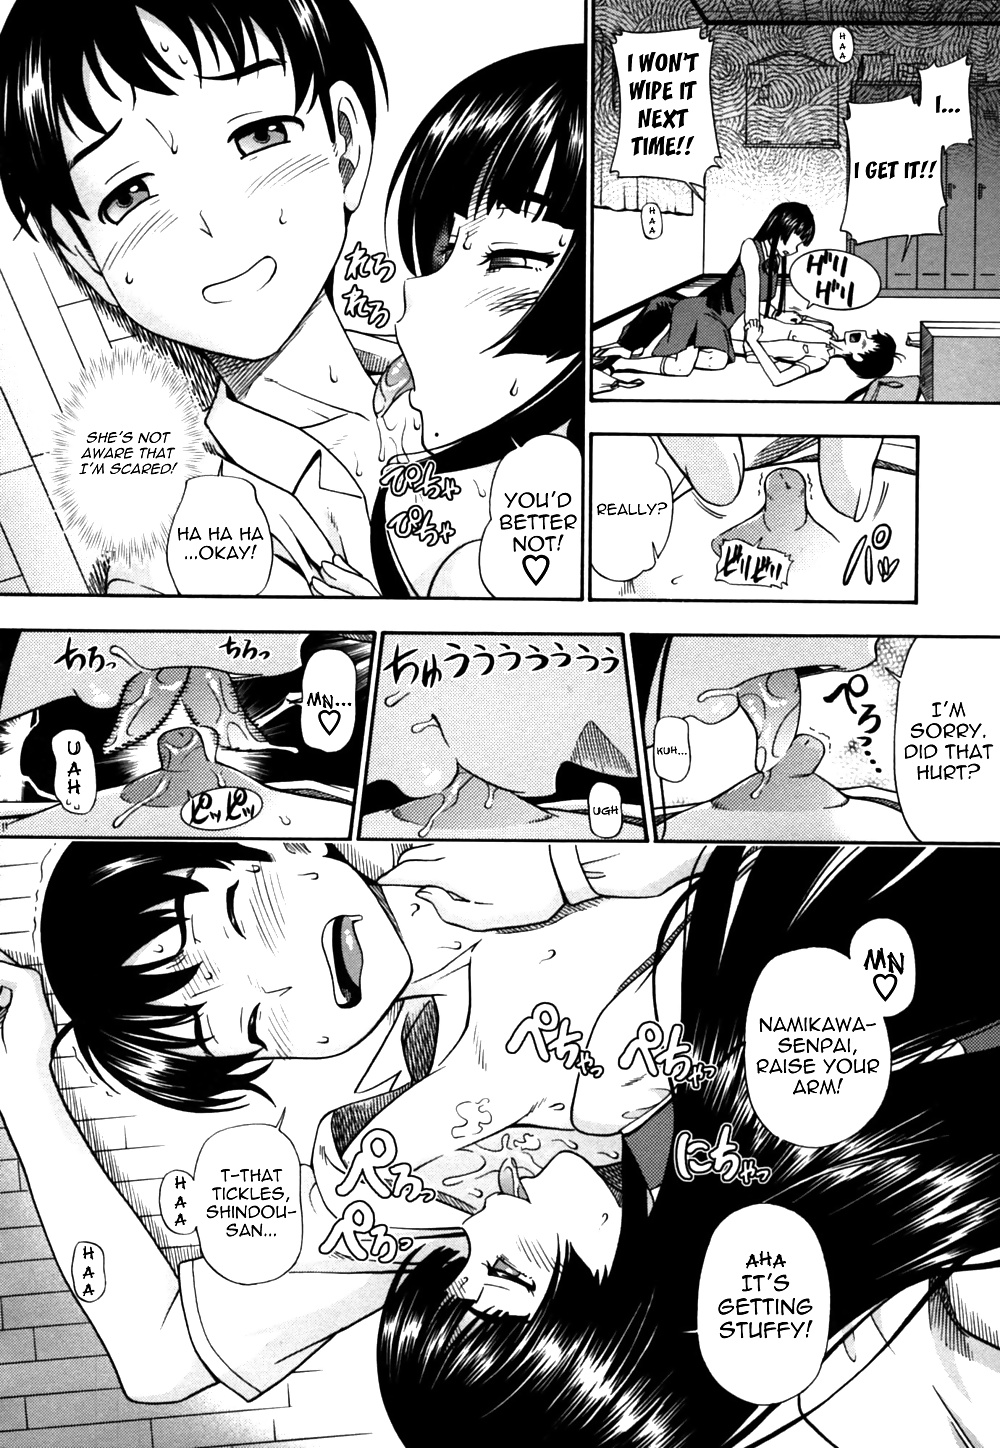 (fumetto hentai) fukudada opere erotiche #3
 #29623308